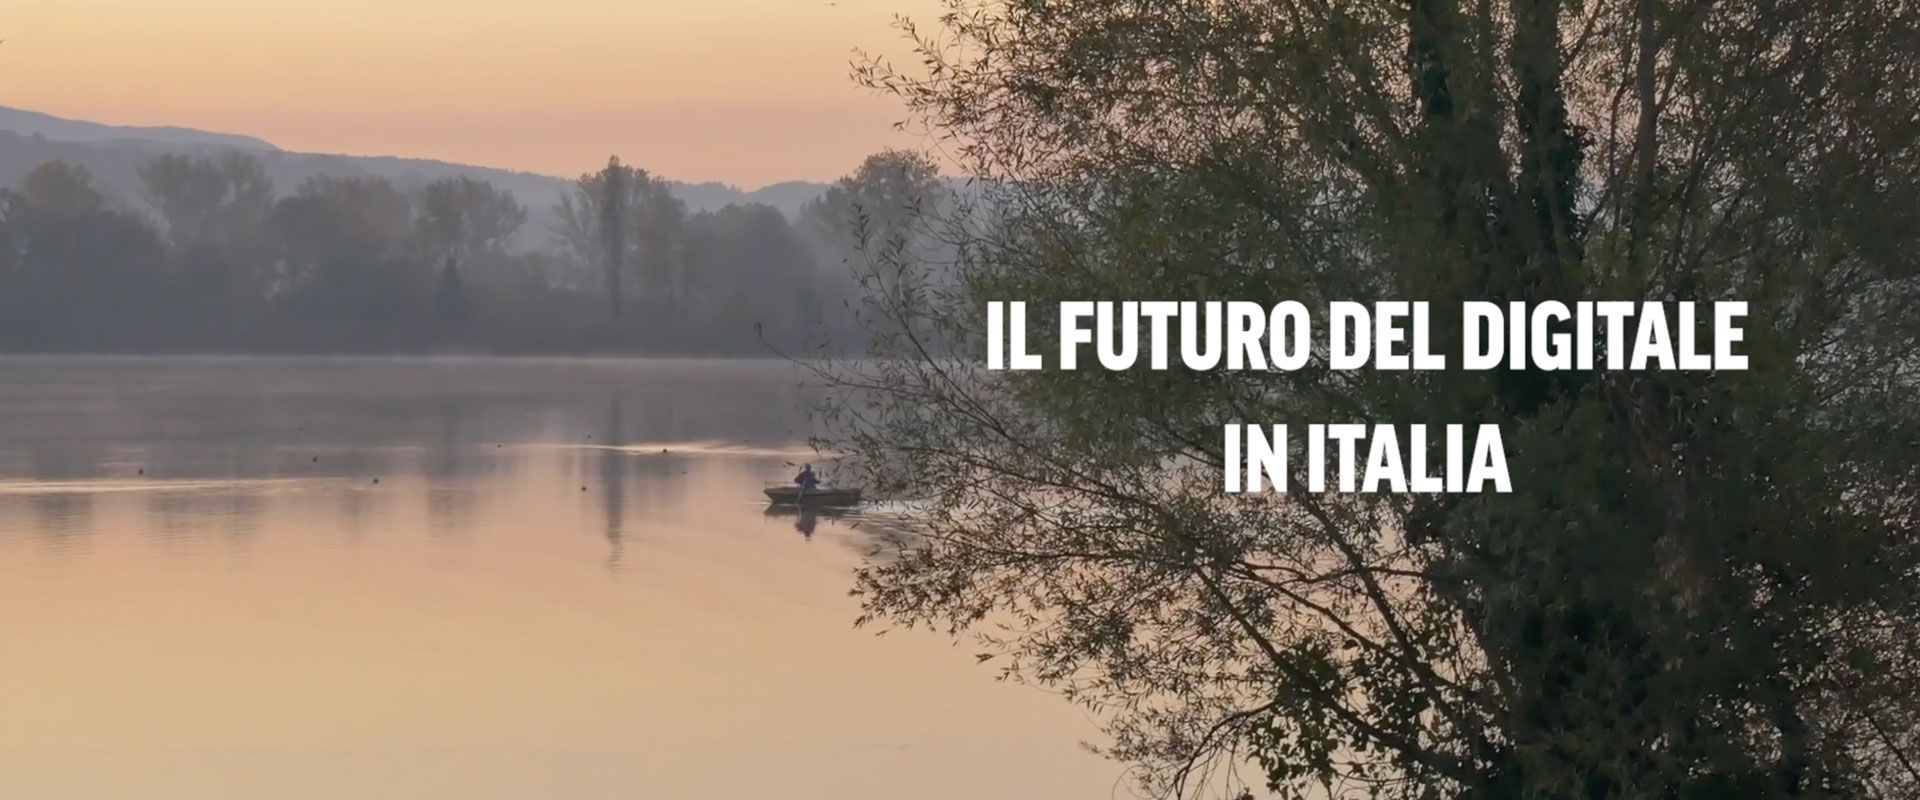 Il futuro del digitale in Italia con Emanuele Tolomei